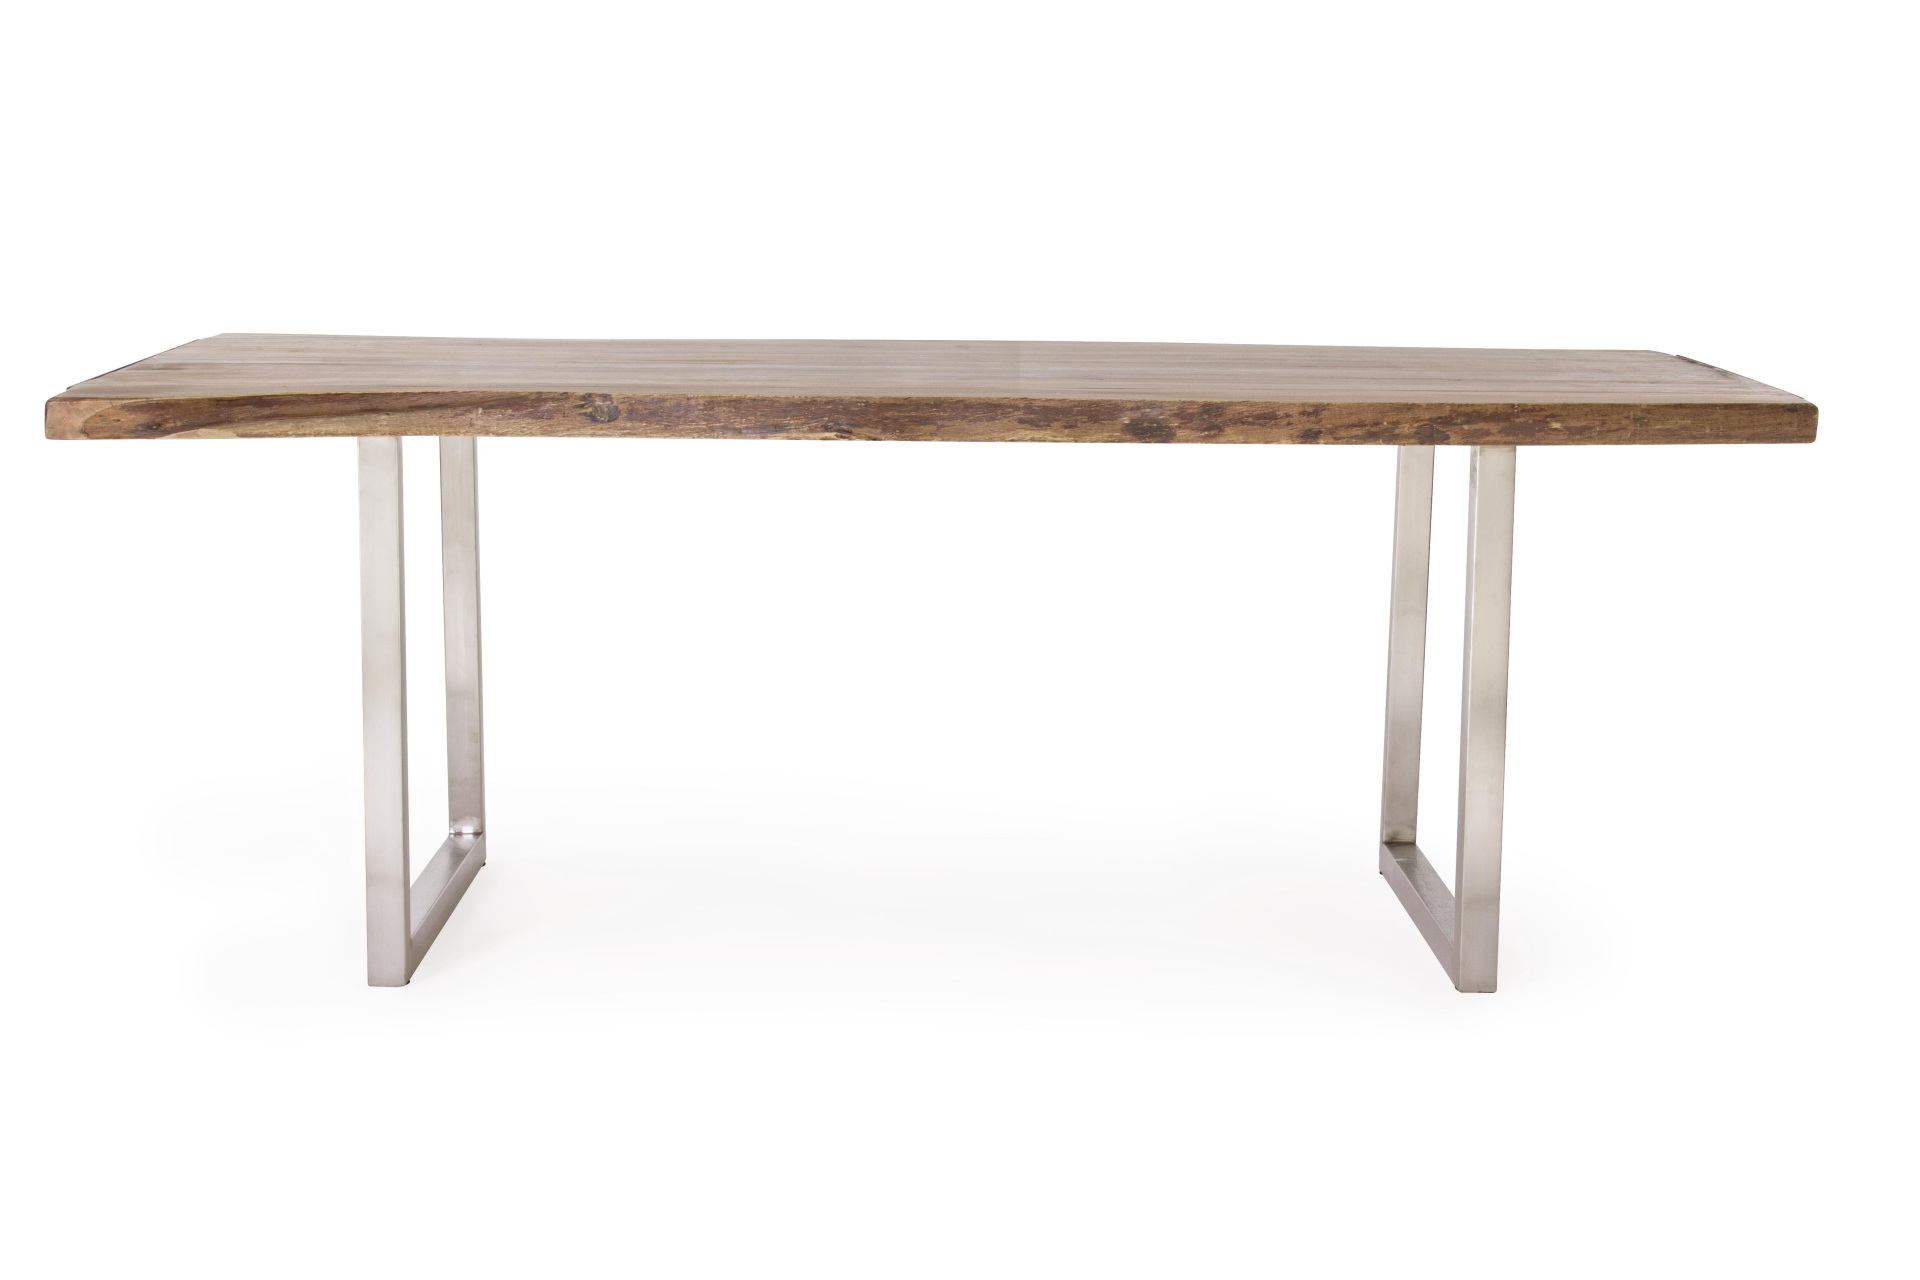 Der Esstisch Osbert überzeugt mit seinem moderndem Design. Gefertigt wurde er aus Akazienholz, welches einen natürlichen Farbton besitzt. Das Gestell des Tisches ist aus Metall und ist in eine silberne Farbe. Der Tisch besitzt eine Breite von 220 cm.